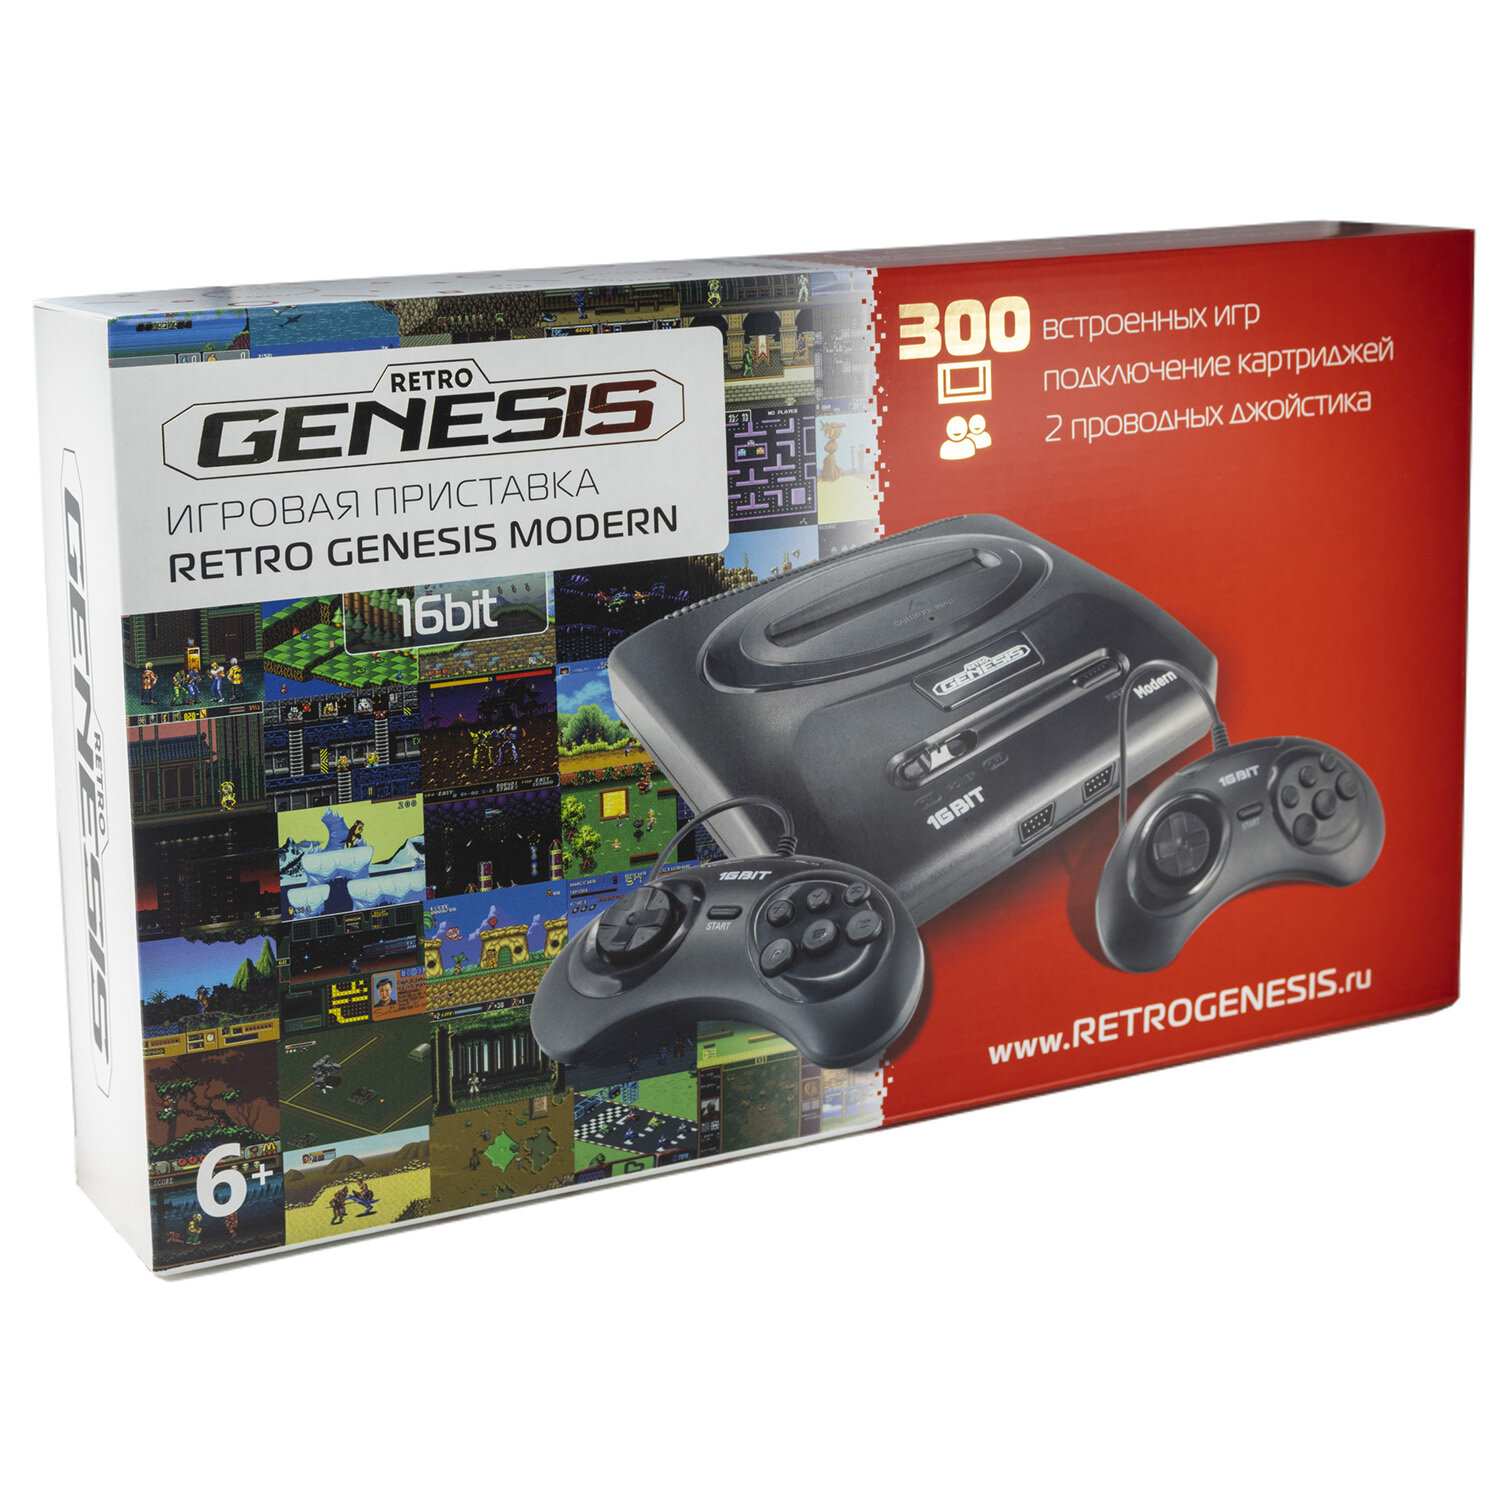 Retro Genesis   Retro Genesis SEGA Retro Genesis Modern ConSkDn92 (Sega) + 300  + 2  